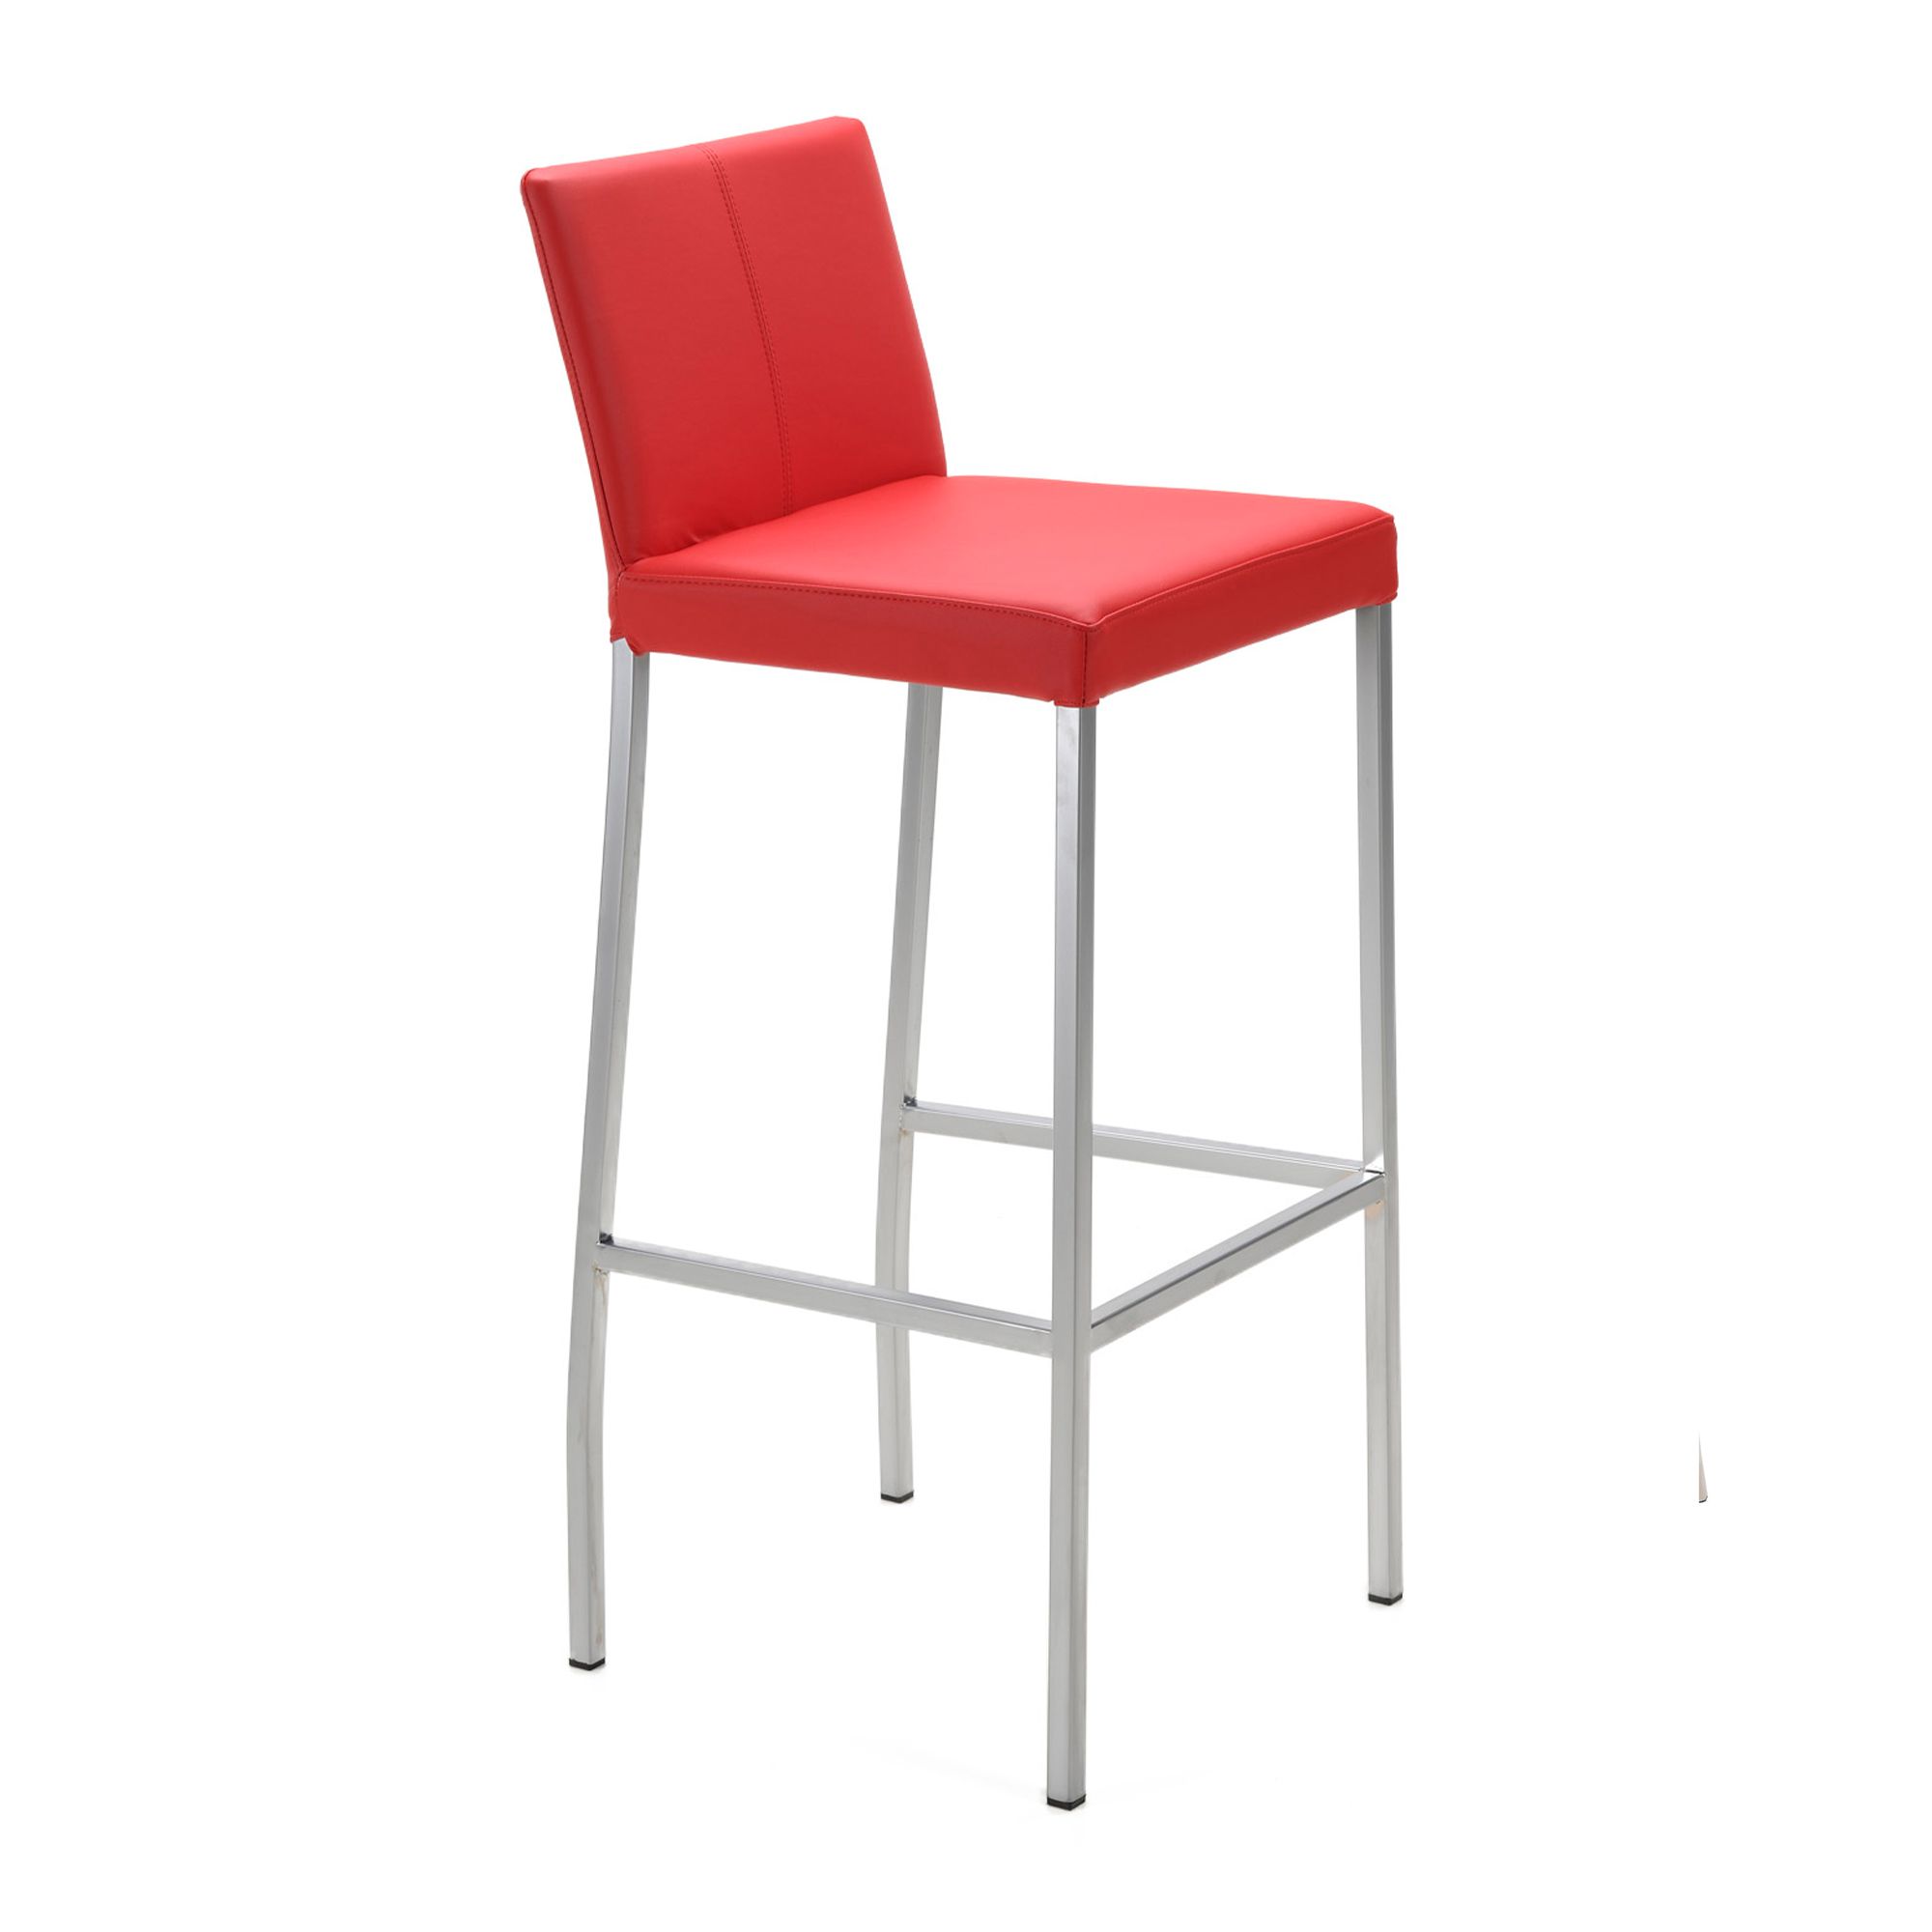 Model 907 stool in modern style